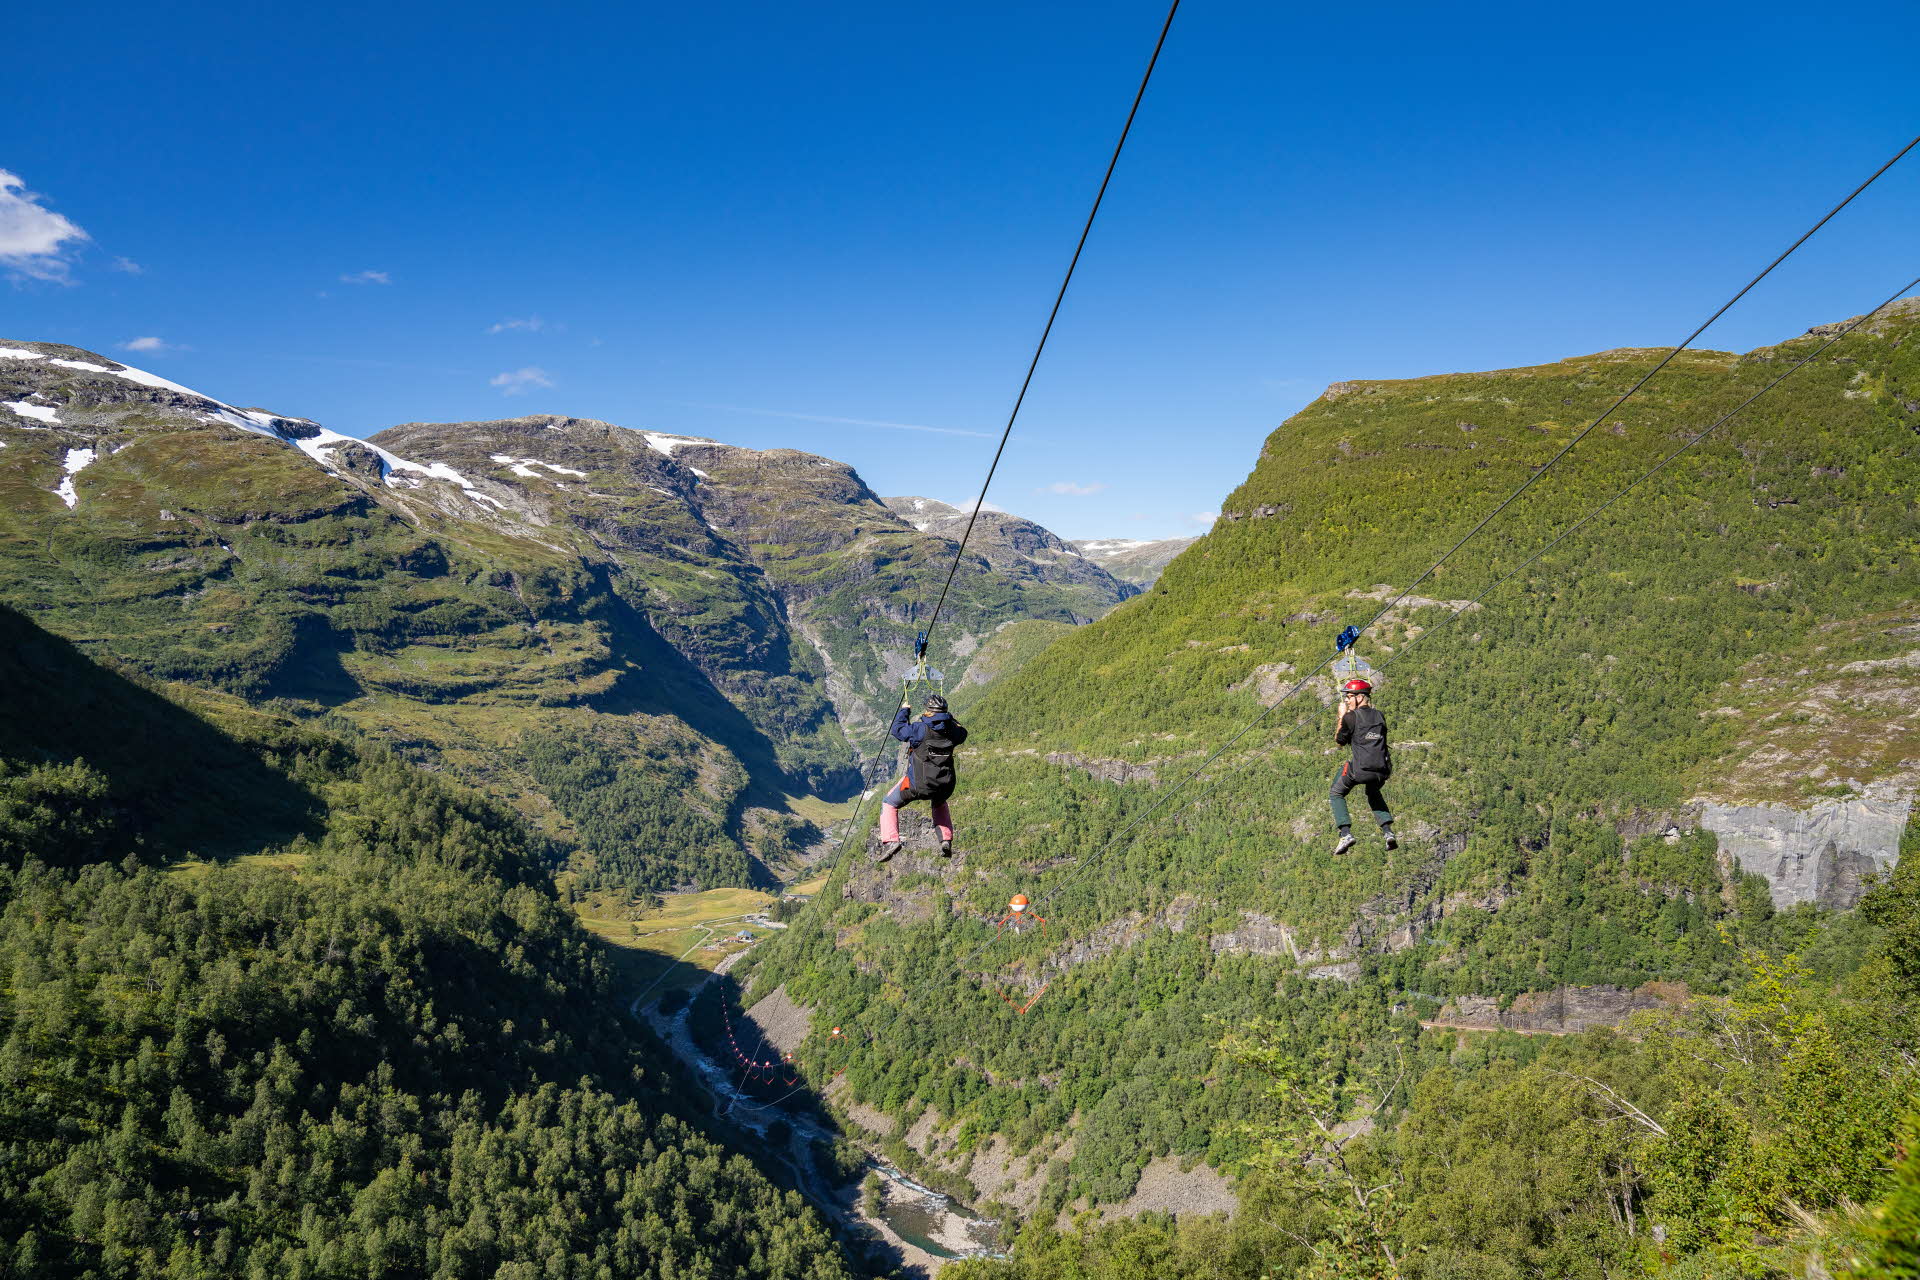 两个人在 Flam 空中溜索 (Flåm Zipline) 上向下滑行。还有山谷以及绿色的森林、河流和周围的群山。 